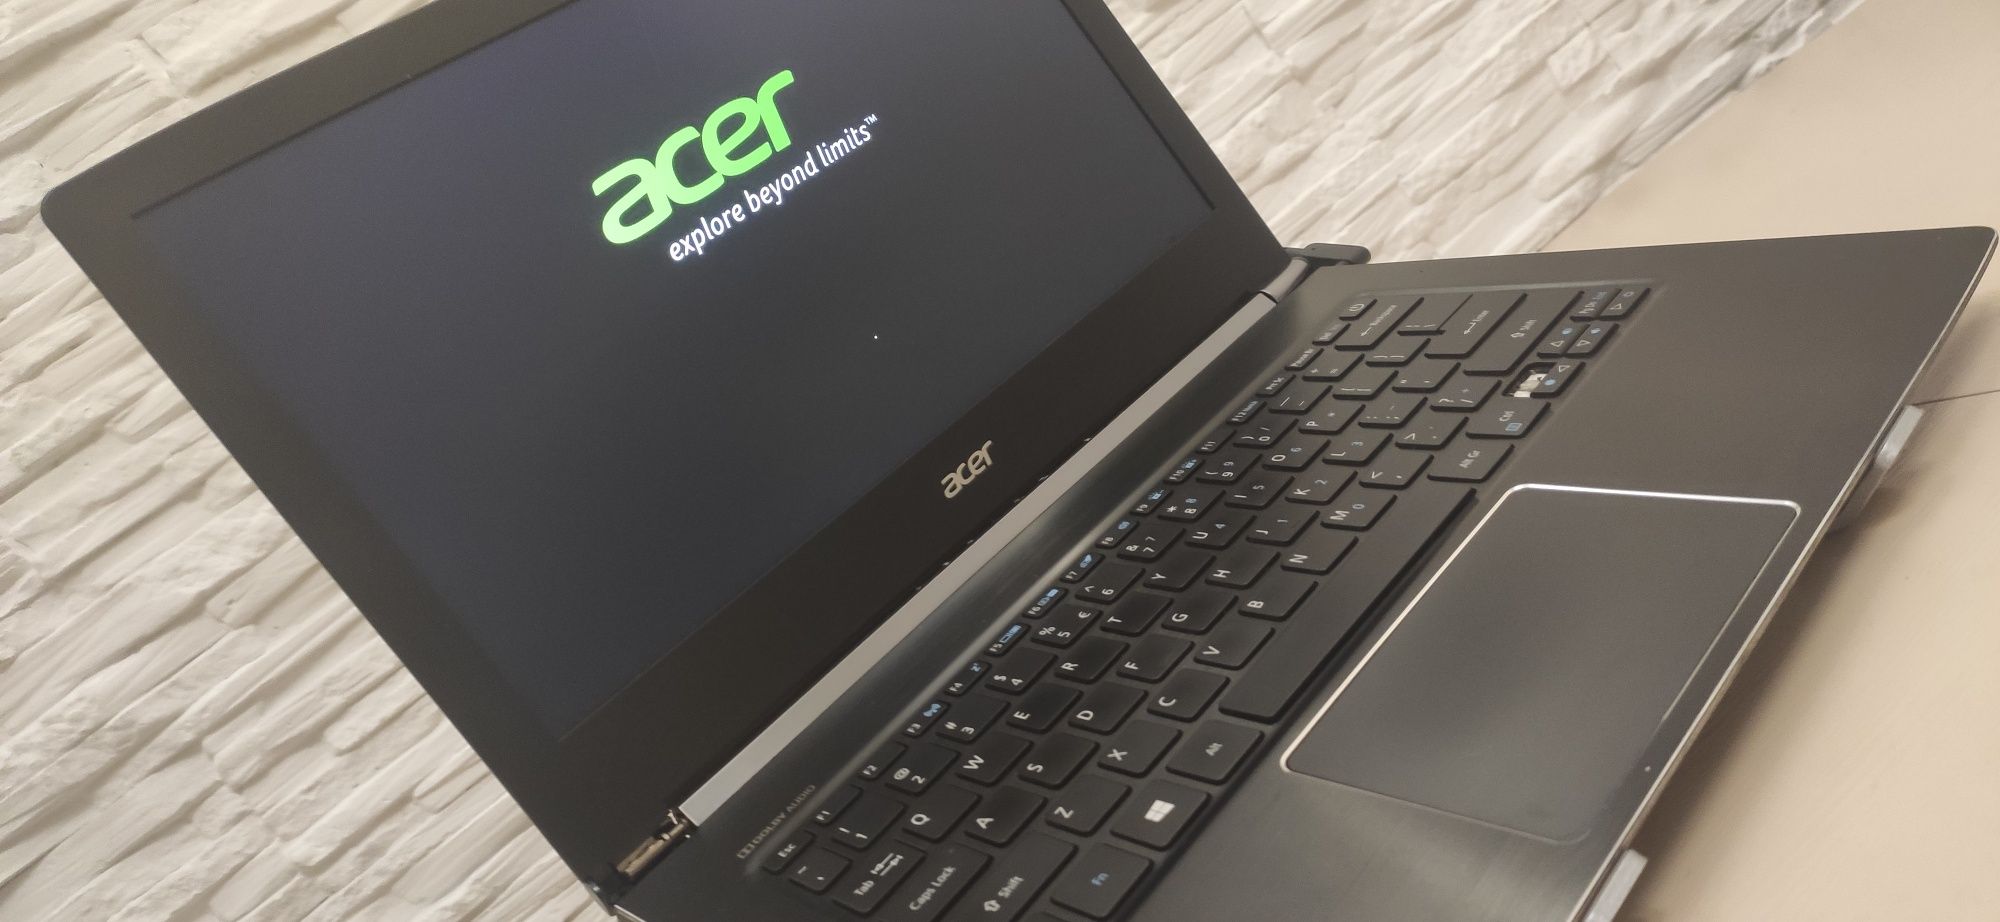 Ноутбук Acer s5 371 c i7 6500u